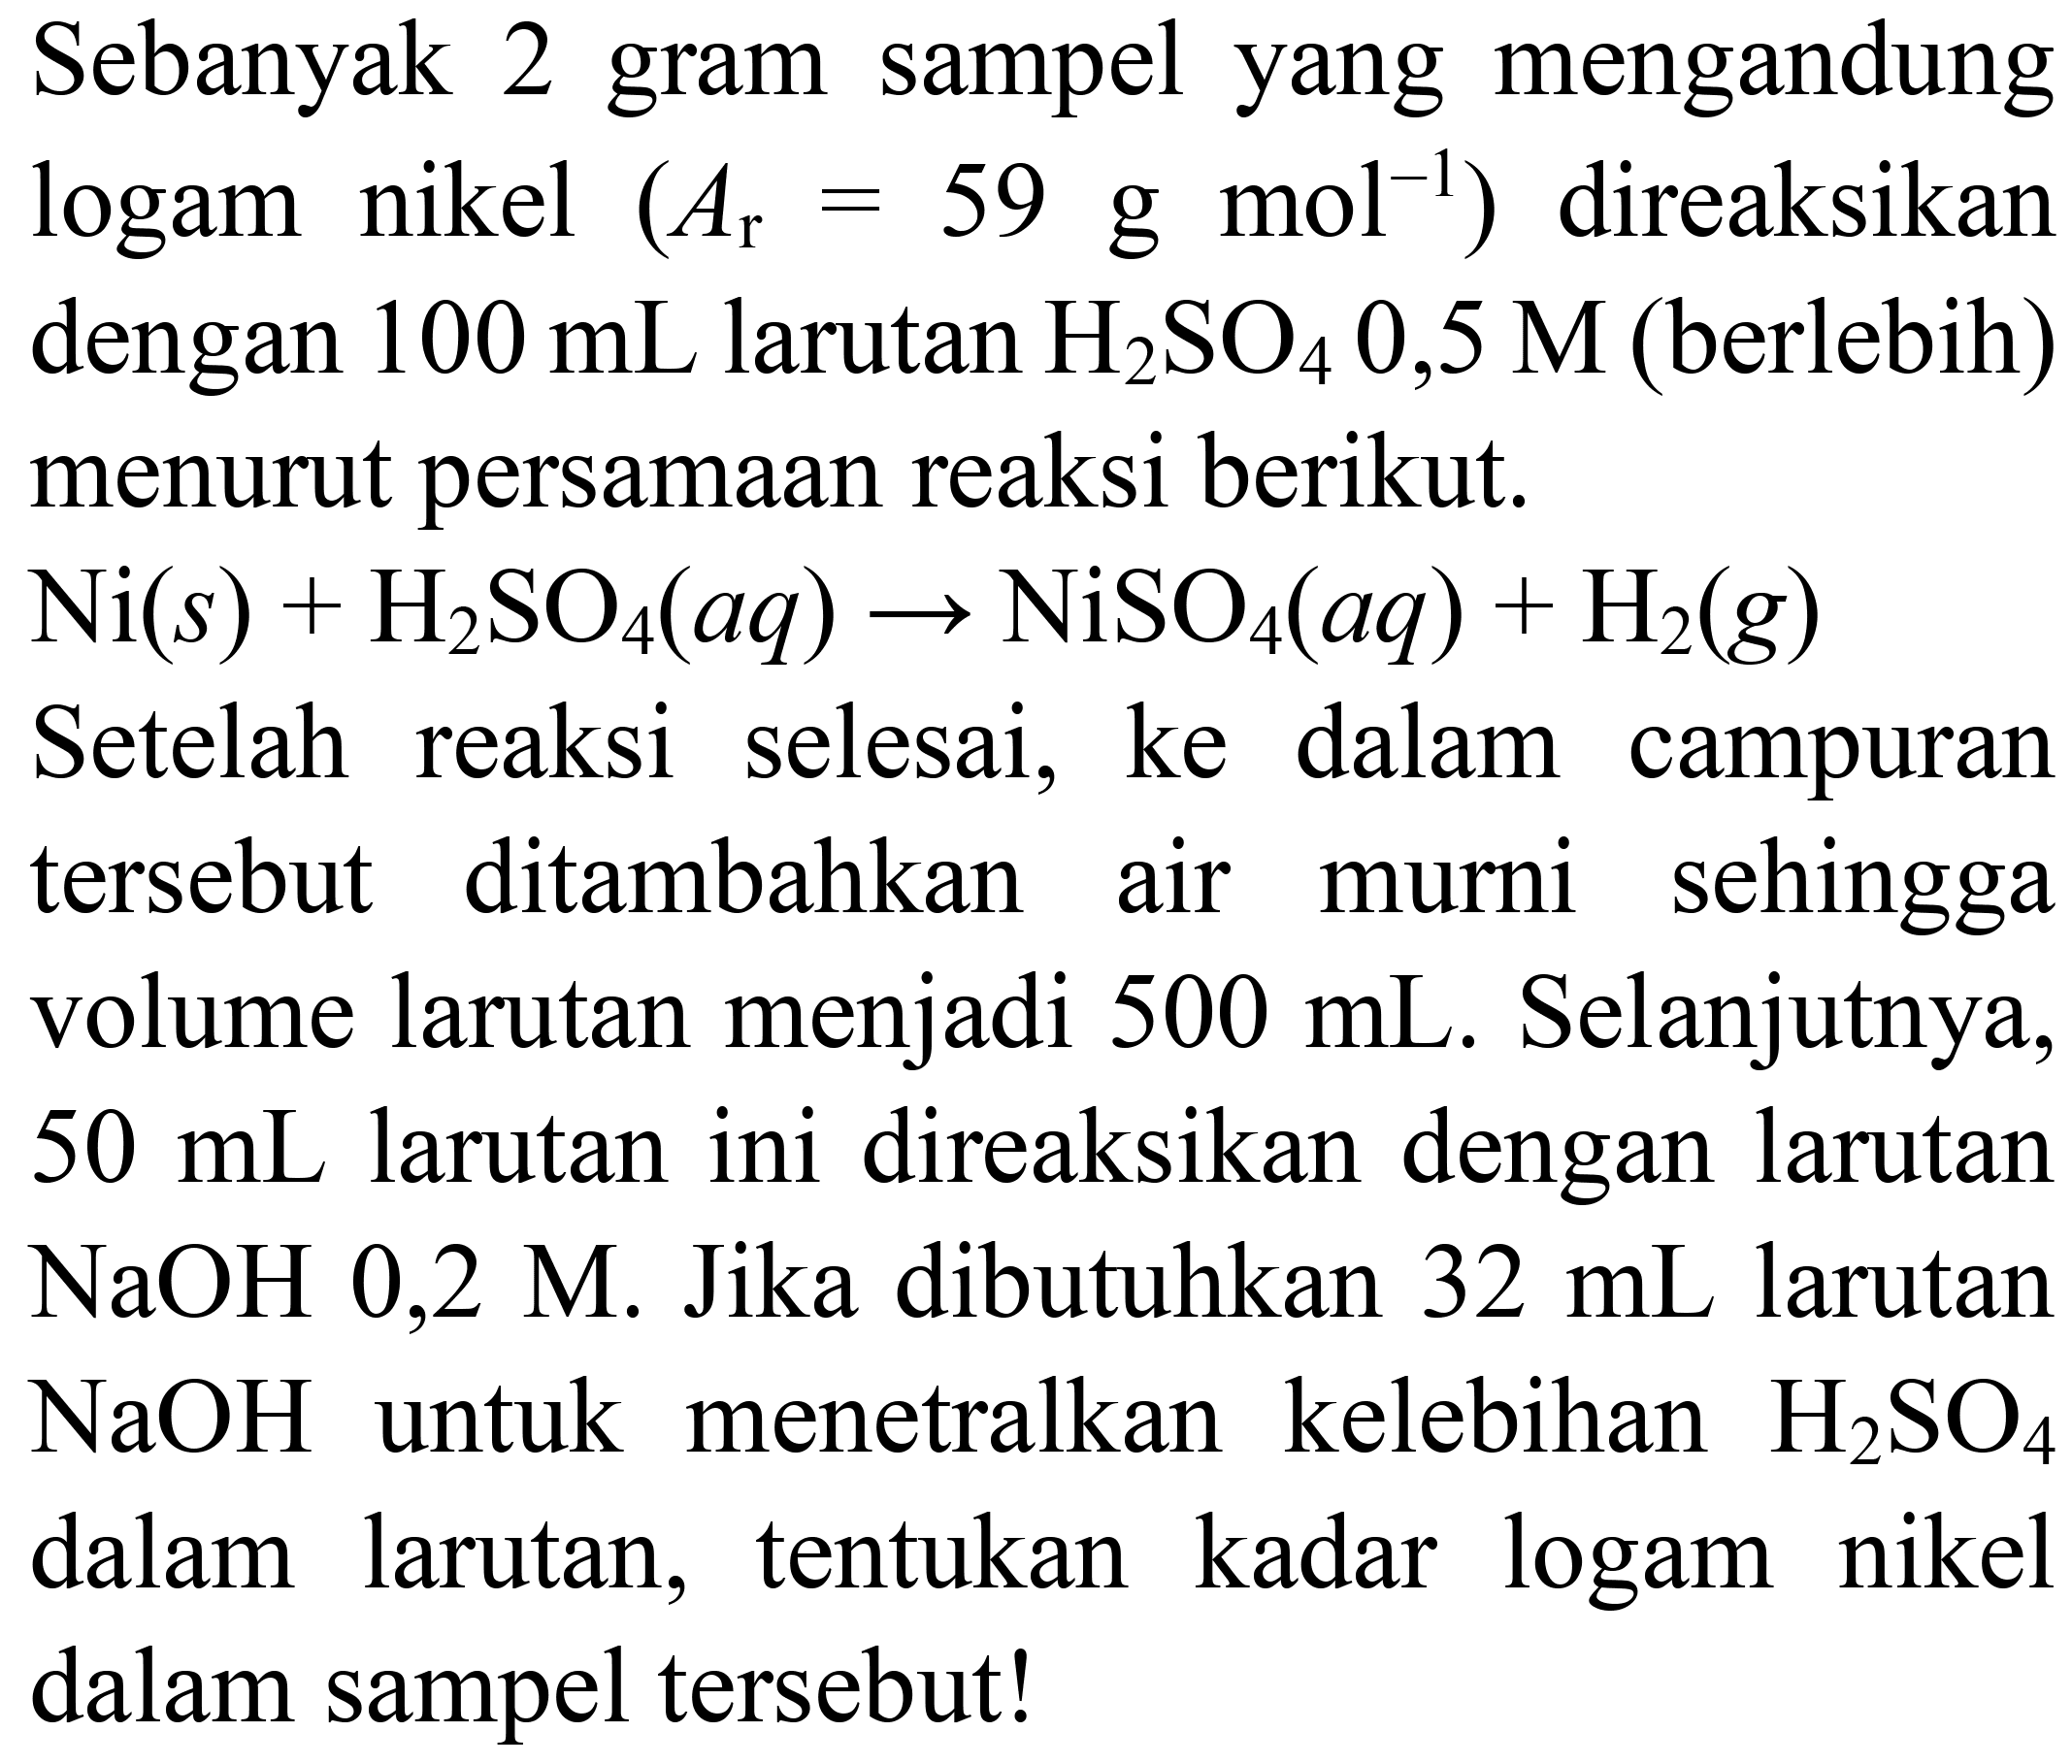 Sebanyak 2 gram sampel yang mengandung logam nikel (Ar = 59 g mol^(-1)) direaksikan dengan 100 mL larutan H2SO4 0,5 M (berlebih) menurut persamaan reaksi berikut. Ni (s) + H2SO4 (aq) -> NiSO4 (aq) + H2 (g) Setelah reaksi selesai, ke dalam campuran tersebut ditambahkan air murni sehingga volume larutan menjadi 500 mL. Selanjutnya, 50 mL larutan ini direaksikan dengan larutan NaOH 0,2 M. Jika dibutuhkan 32 mL larutan NaOH untuk menetralkan kelebihan H2SO4 dalam larutan, tentukan kadar logam nikel dalam sampel tersebut!